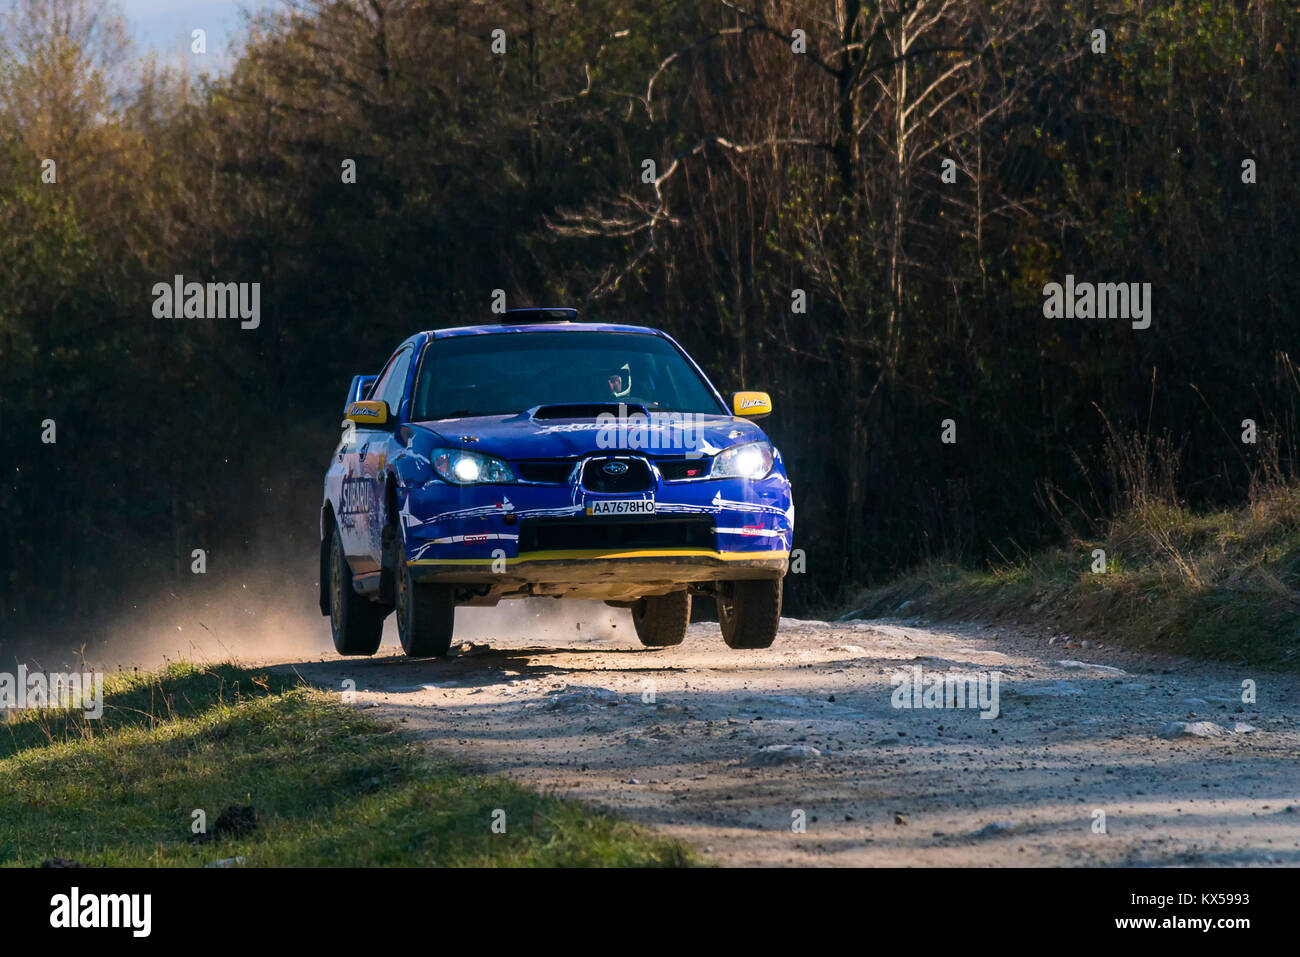 Lviv, Ucraina - 1 Novembre 2015: Sconosciuto racers per la marca di automobili Subaru Impreza WRX STI (No.8) superare il via al raduno annuale della Galizia, nea Foto Stock